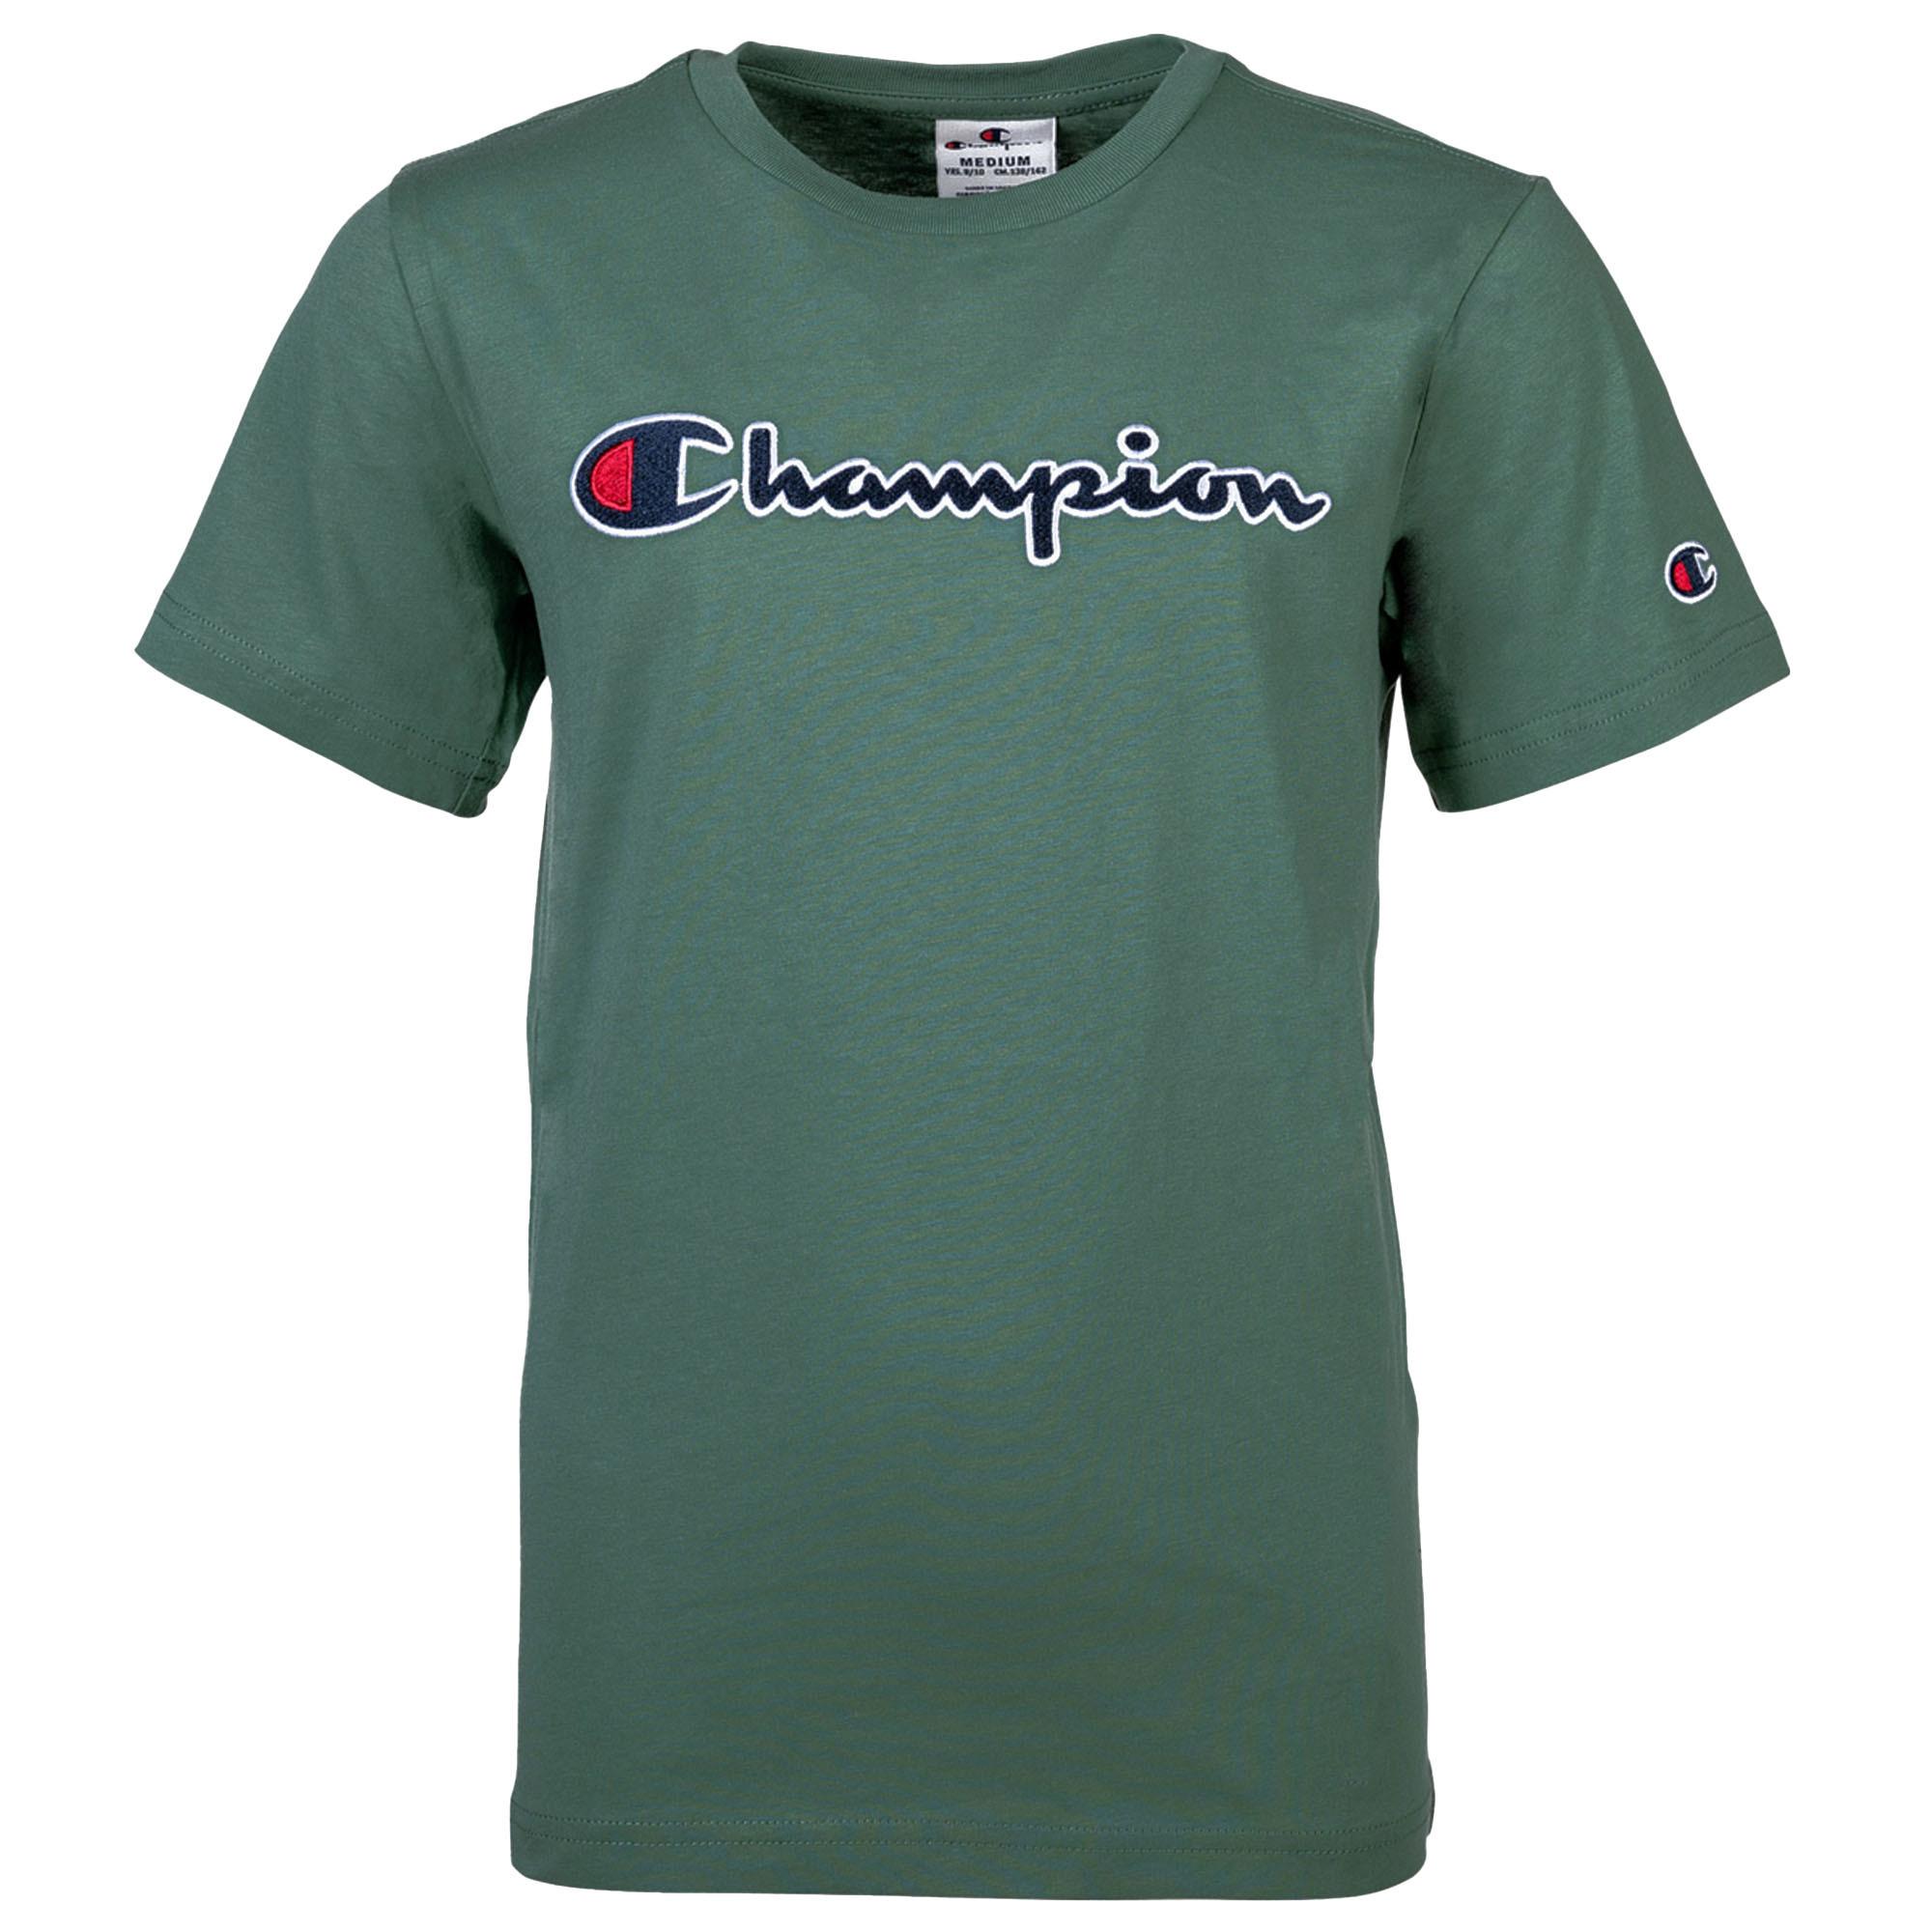 von T-Shirt Shop SportScheck CHAMPION kaufen Grün Online im T-Shirt